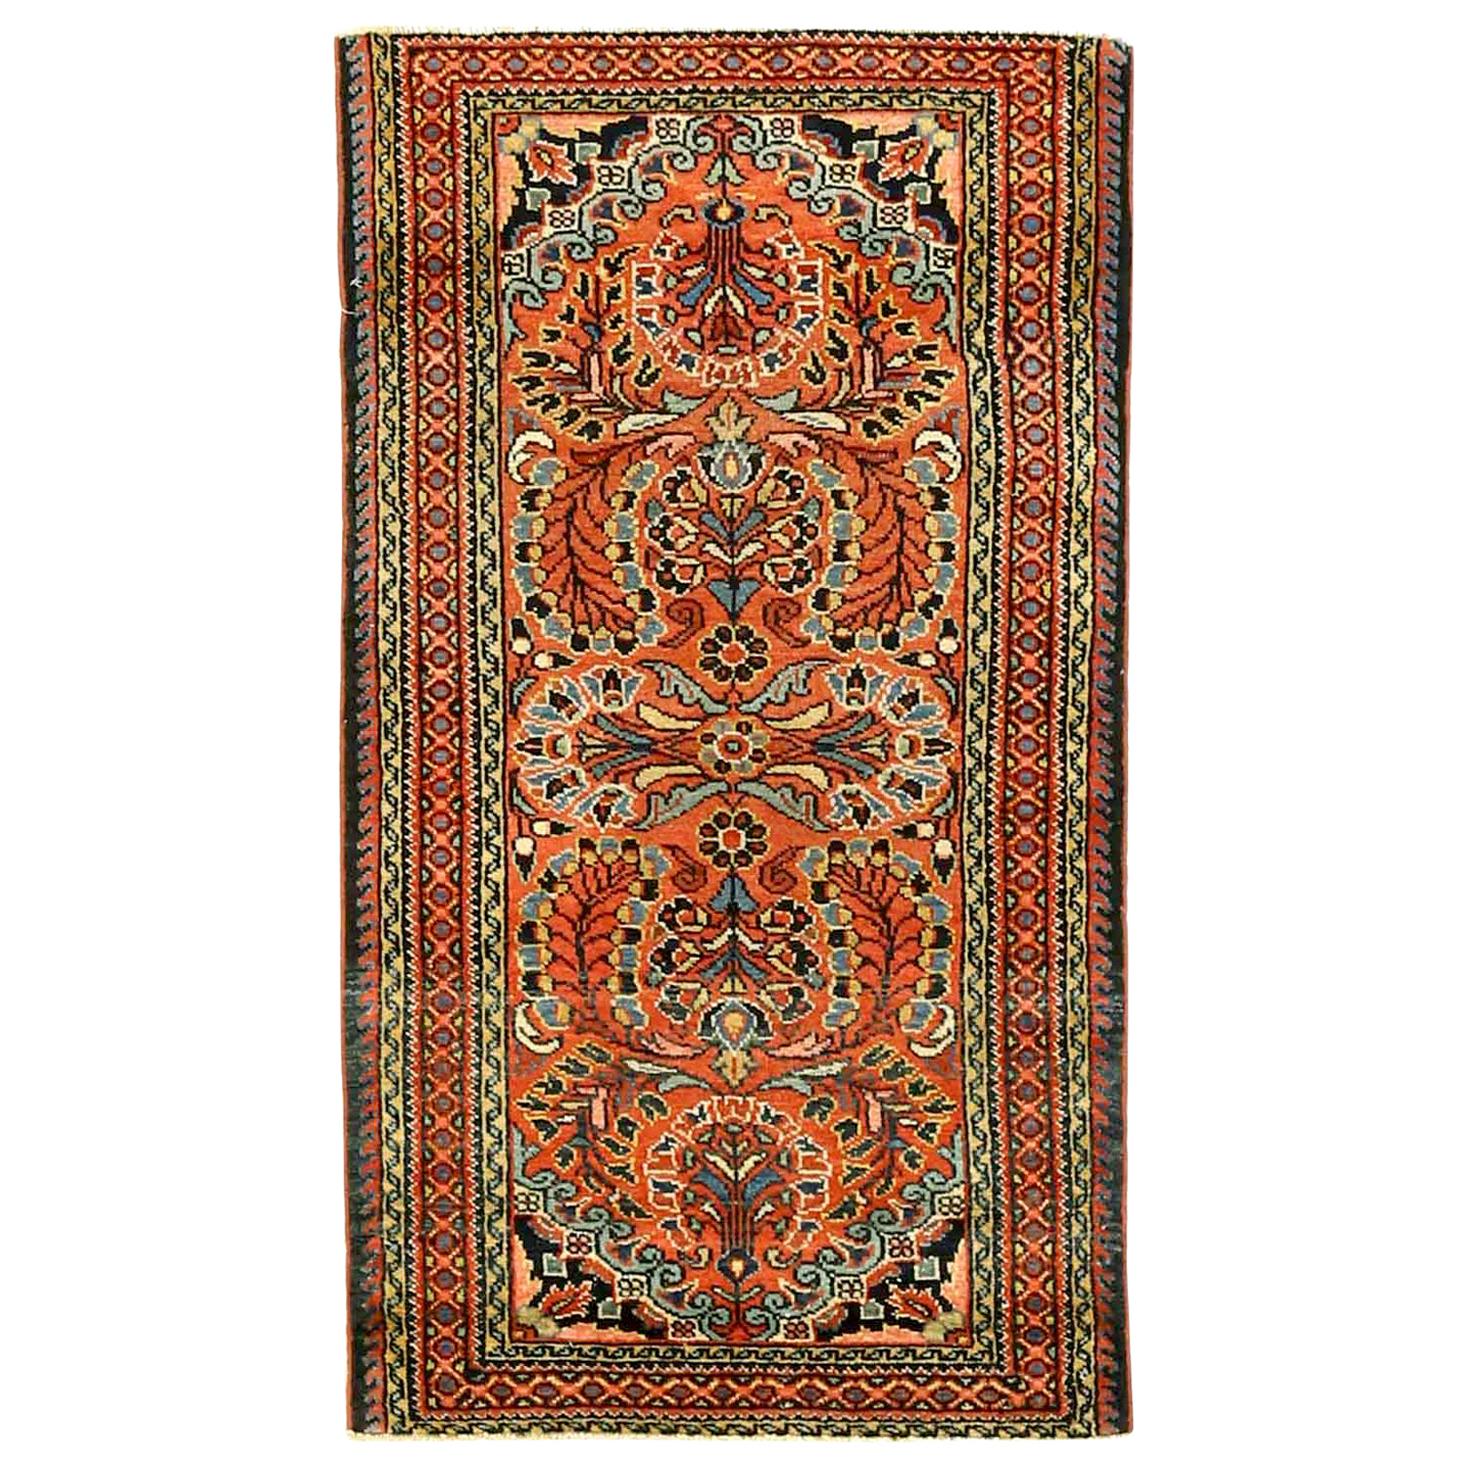 Antiker persischer Teppich im Lilienmuster, antik